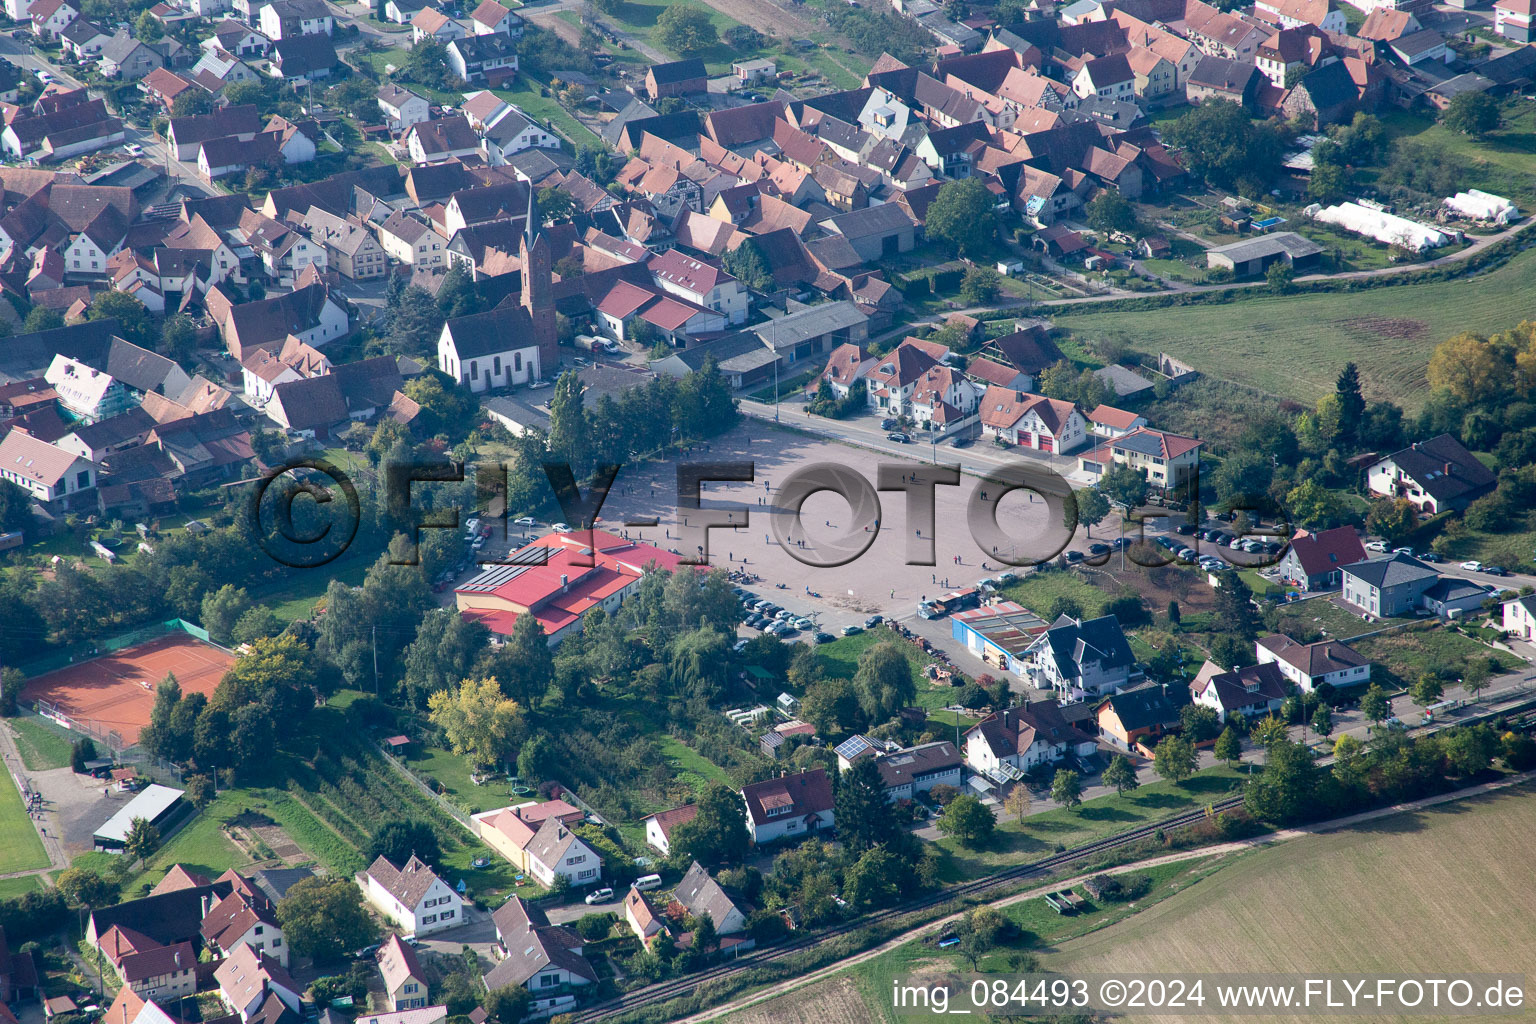 Vue aérienne de Terrain de sport à le quartier Drusweiler in Kapellen-Drusweiler dans le département Rhénanie-Palatinat, Allemagne